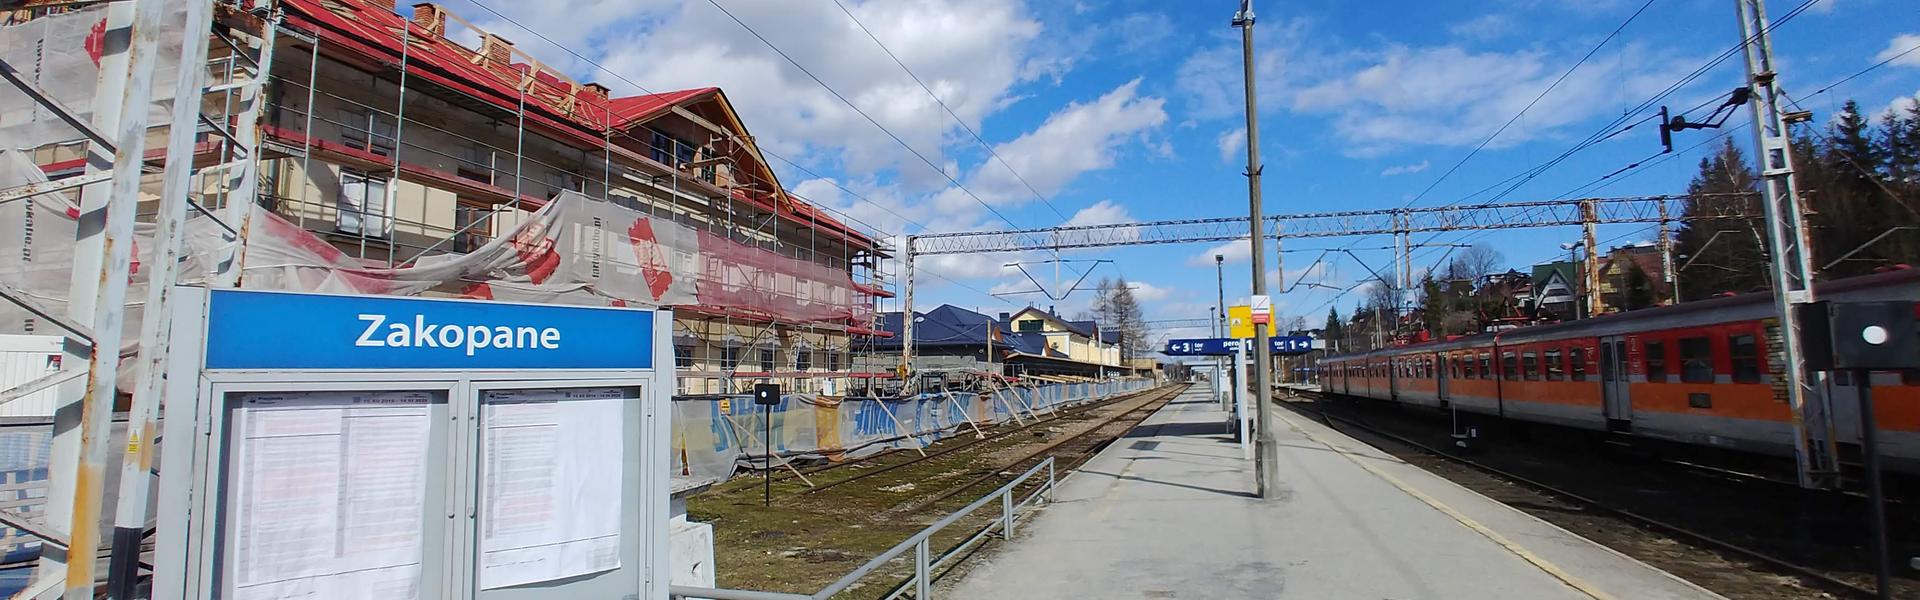 stacja pociągu w Zakopanem